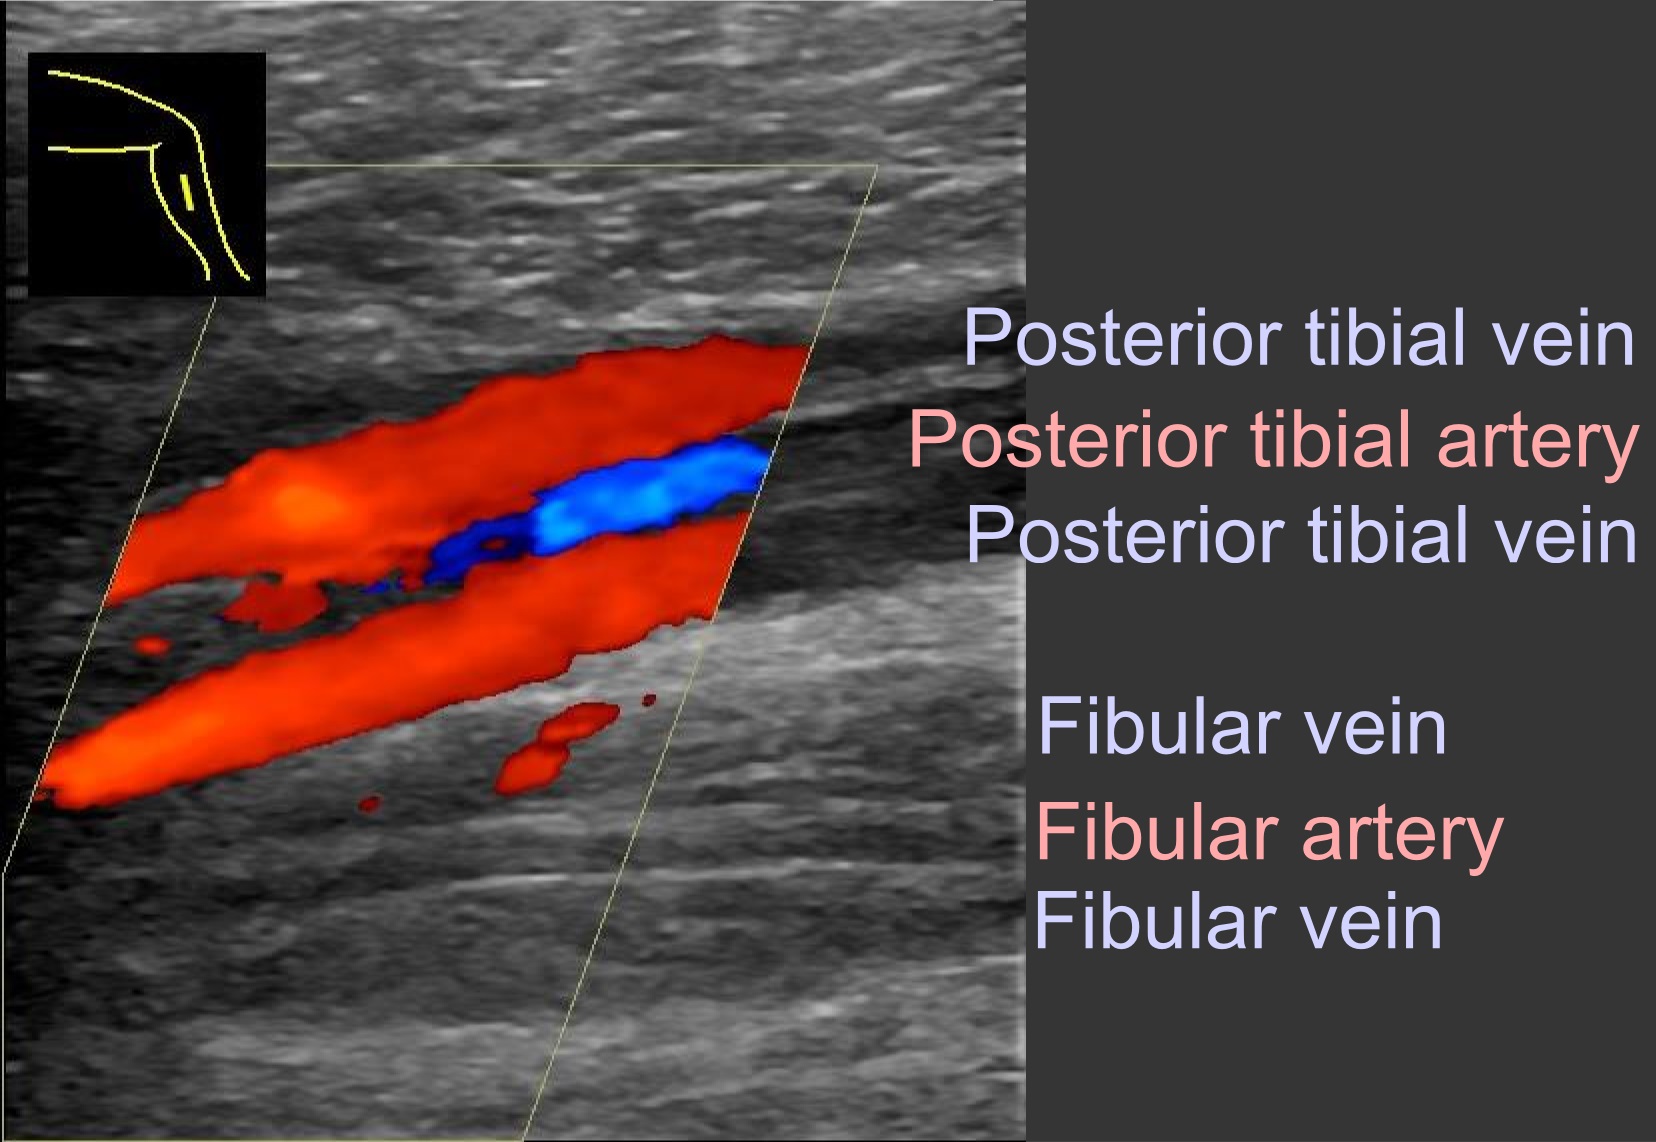 File:Ultrasonography of thrombosis of the fibular veins, coronal